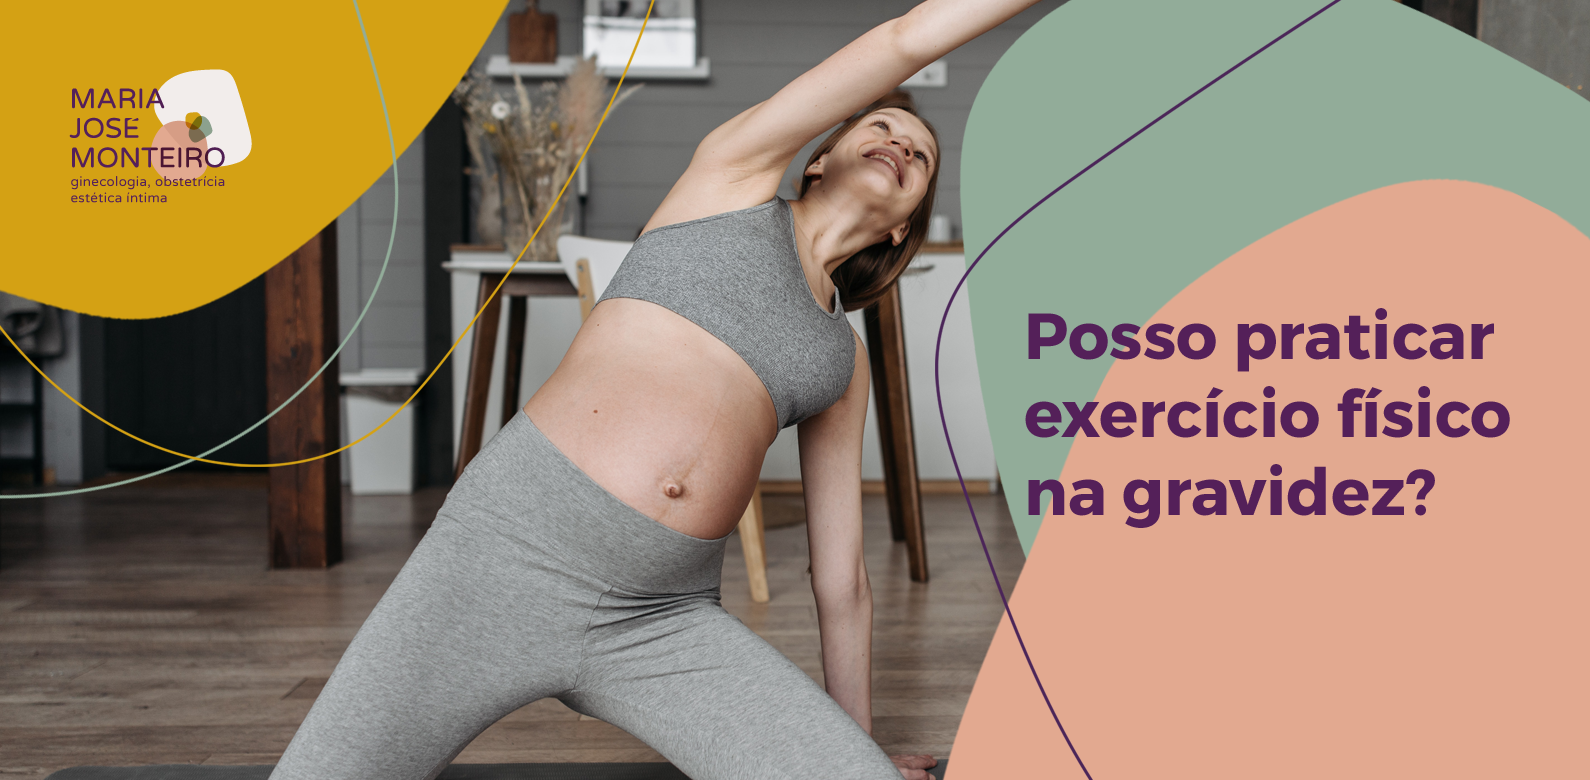 Posso praticar exercício físico na gravidez? – Dra Maria José Monteiro